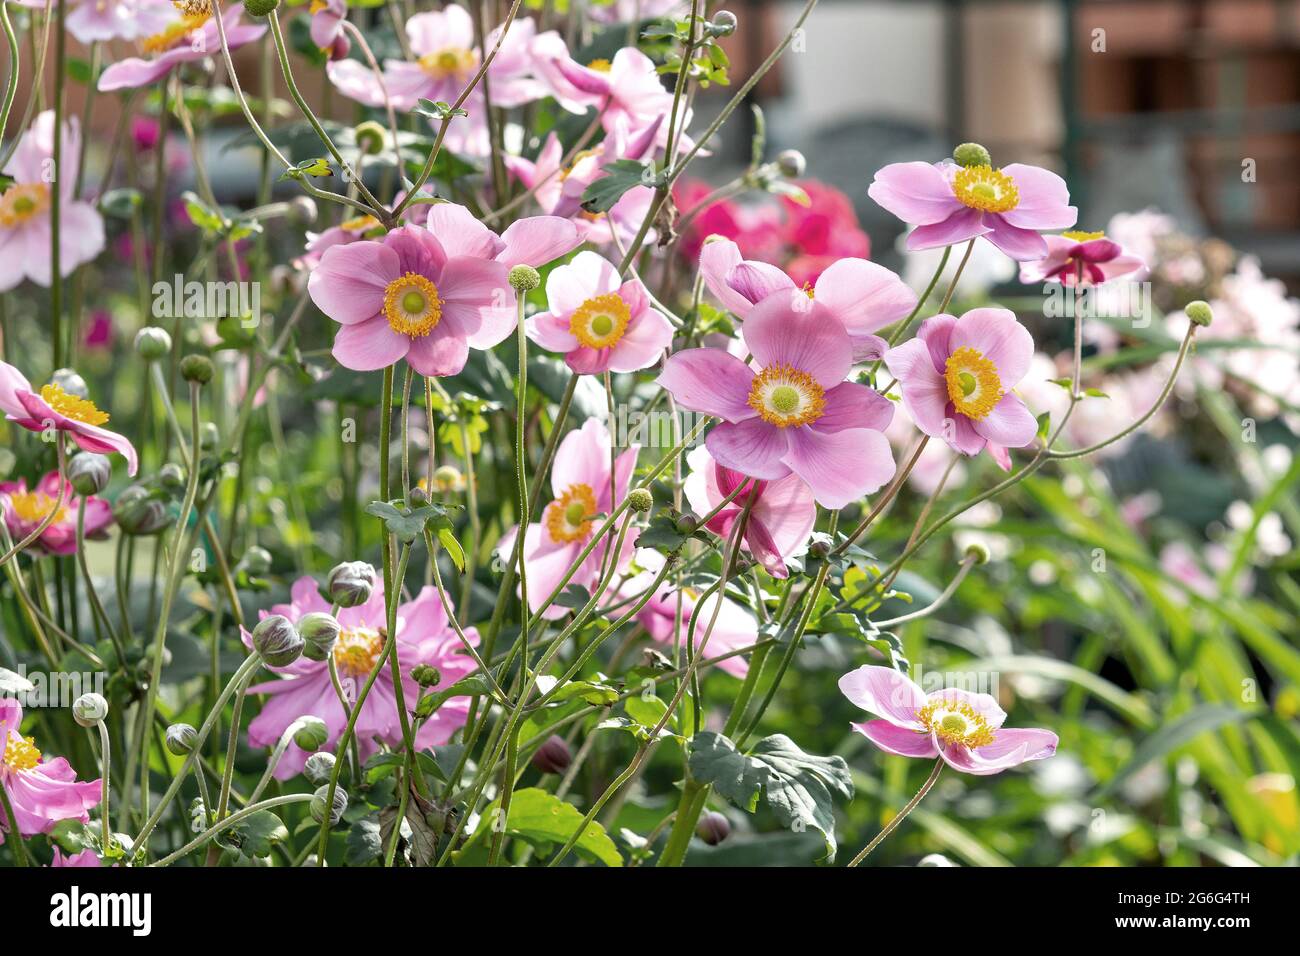 Japanese anemone, Japanese windflower, Chinese anemone (Anemone hupehensis 'Splendens', Anemone hupehensis Splendens), blooming, cultivar Splendens, Stock Photo